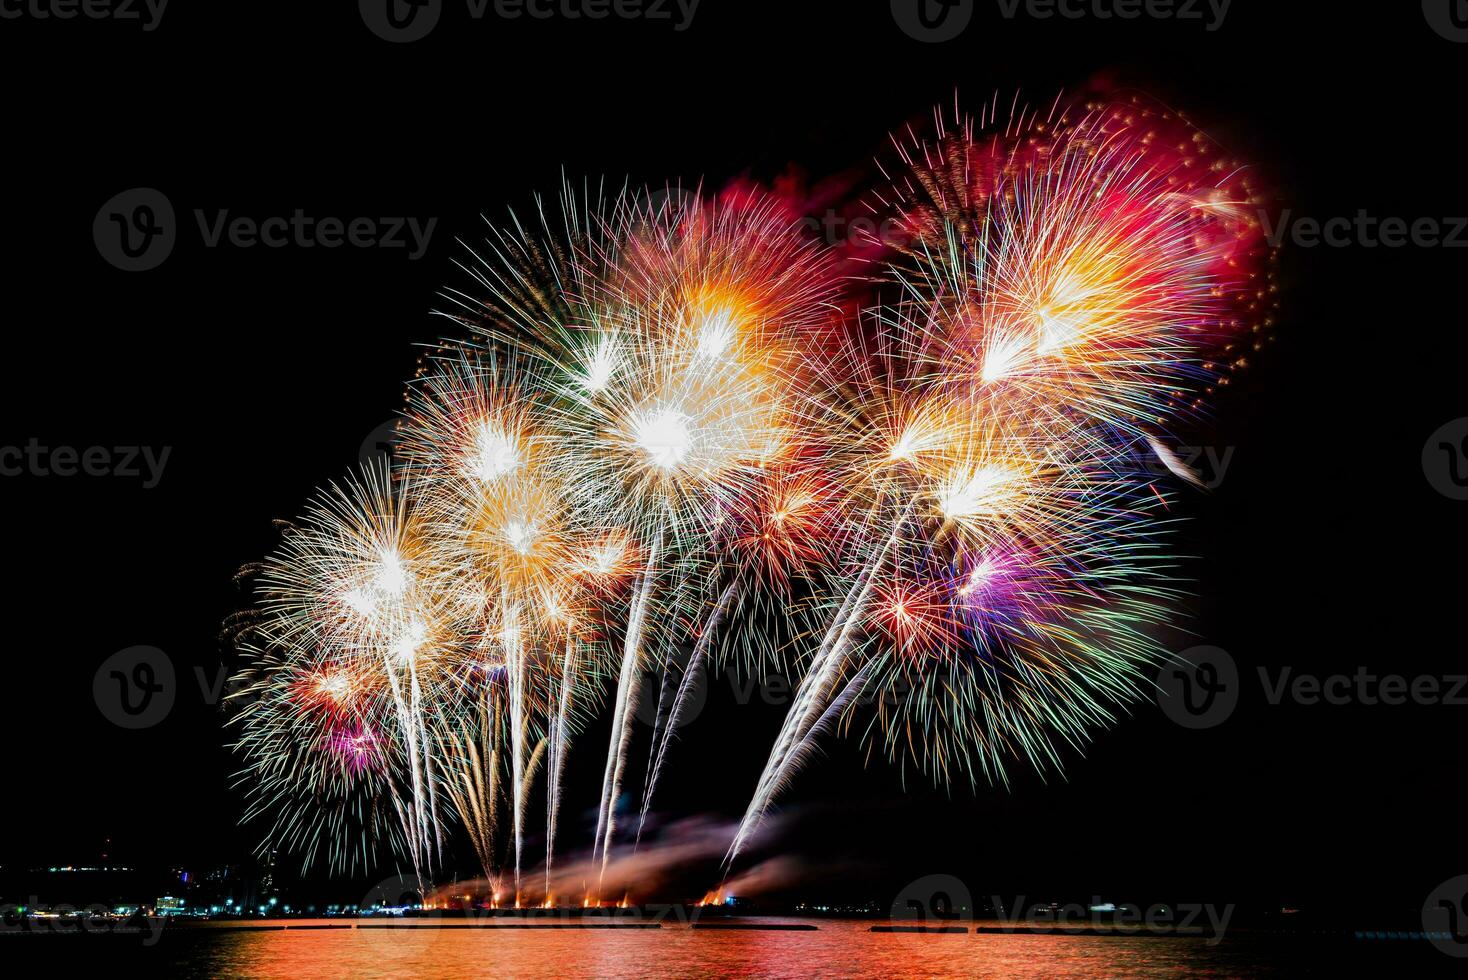 geweldig mooi kleurrijk vuurwerk op de feestavond, te zien op het zeestrand met veelkleurige reflectie op water foto